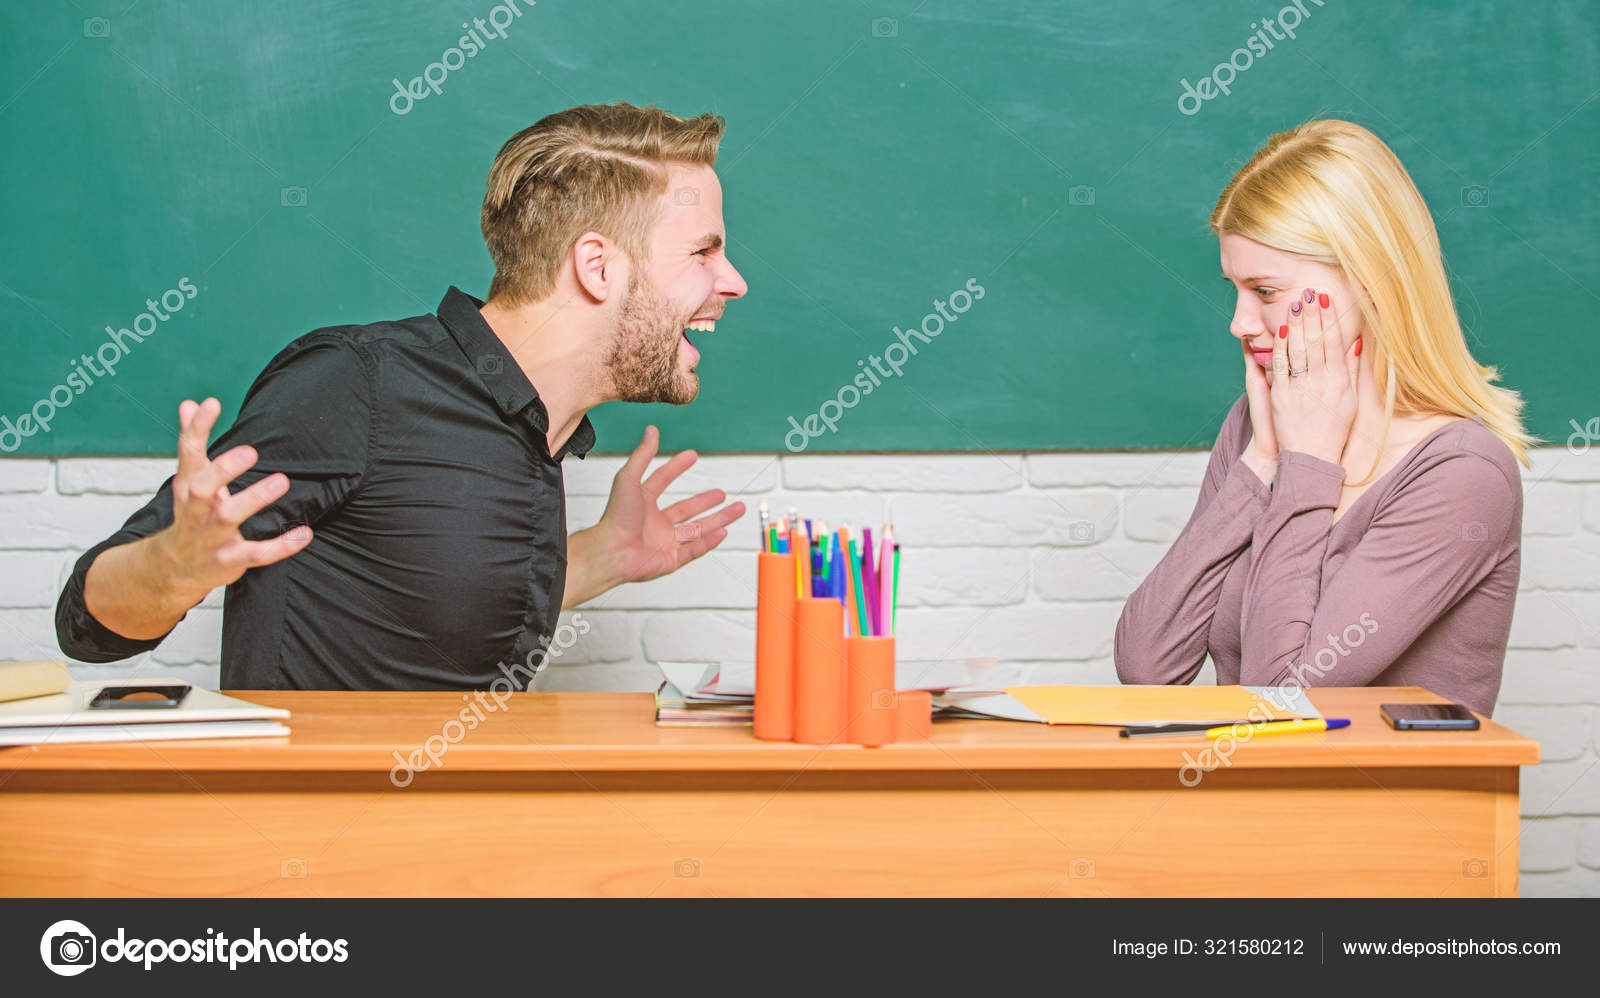 Our teacher insisted. Злой учитель за столом. Учитель сидит за столом. Пара учится. Учителя разочарованы.